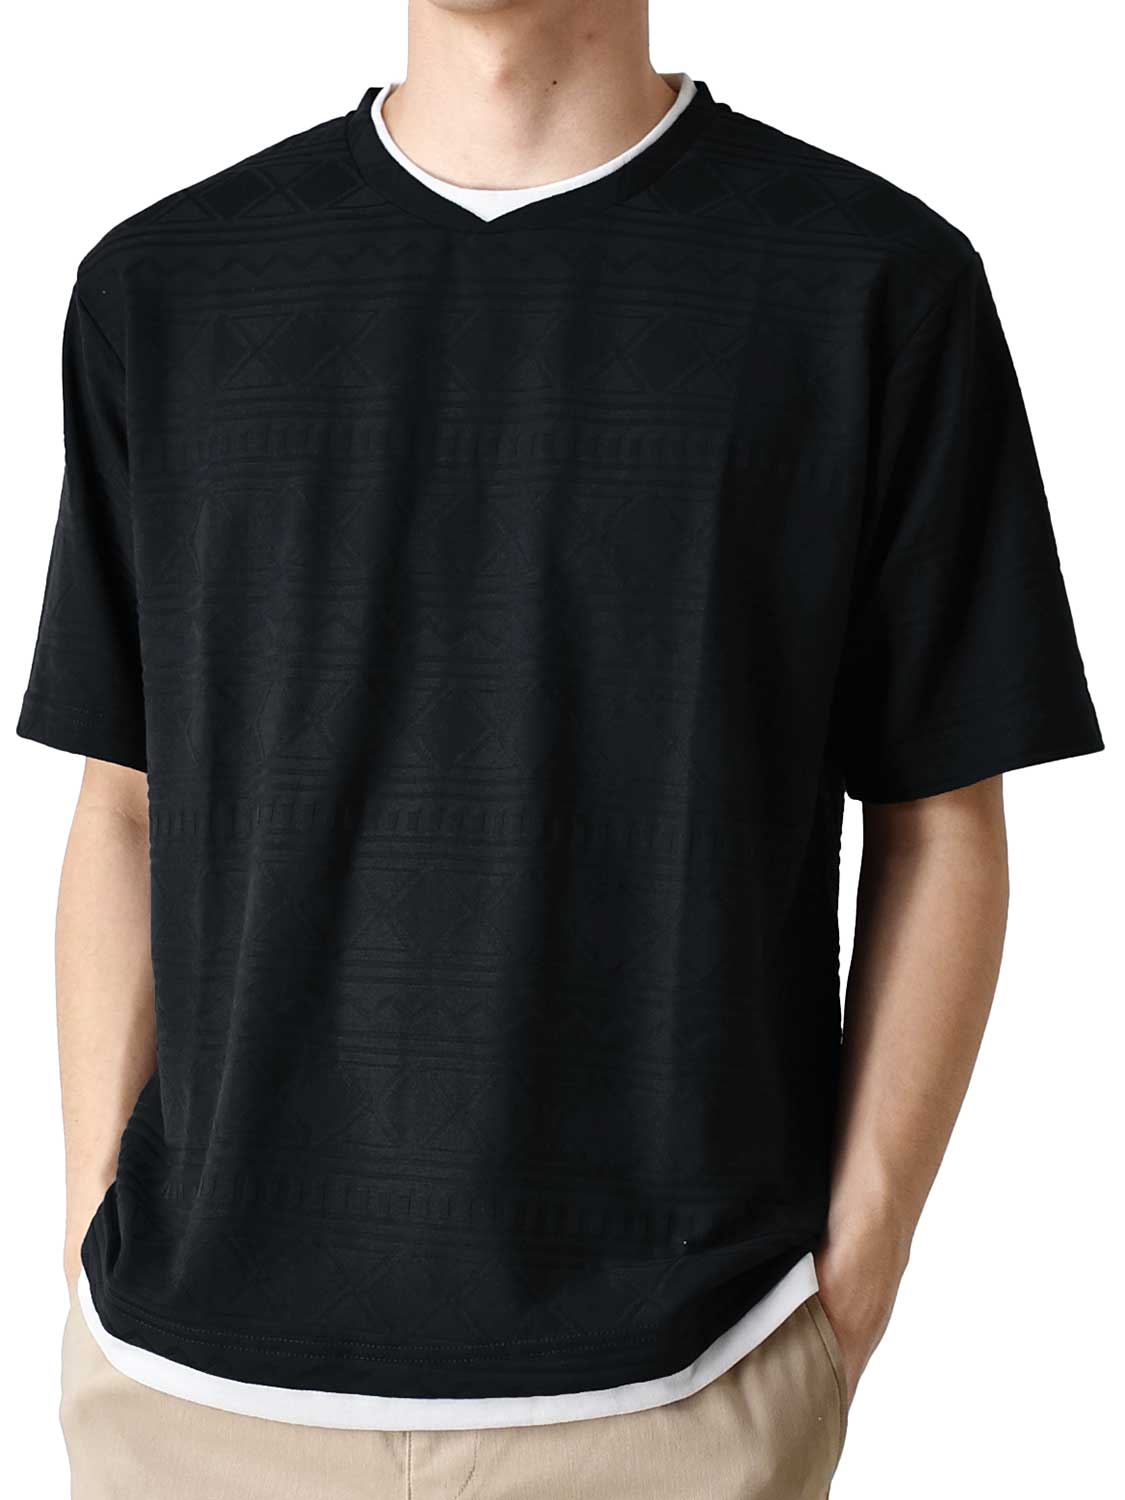 カットソー Tシャツ メンズ 総柄 ストレッチ 重ね着風 送料無料 通販Y 半袖